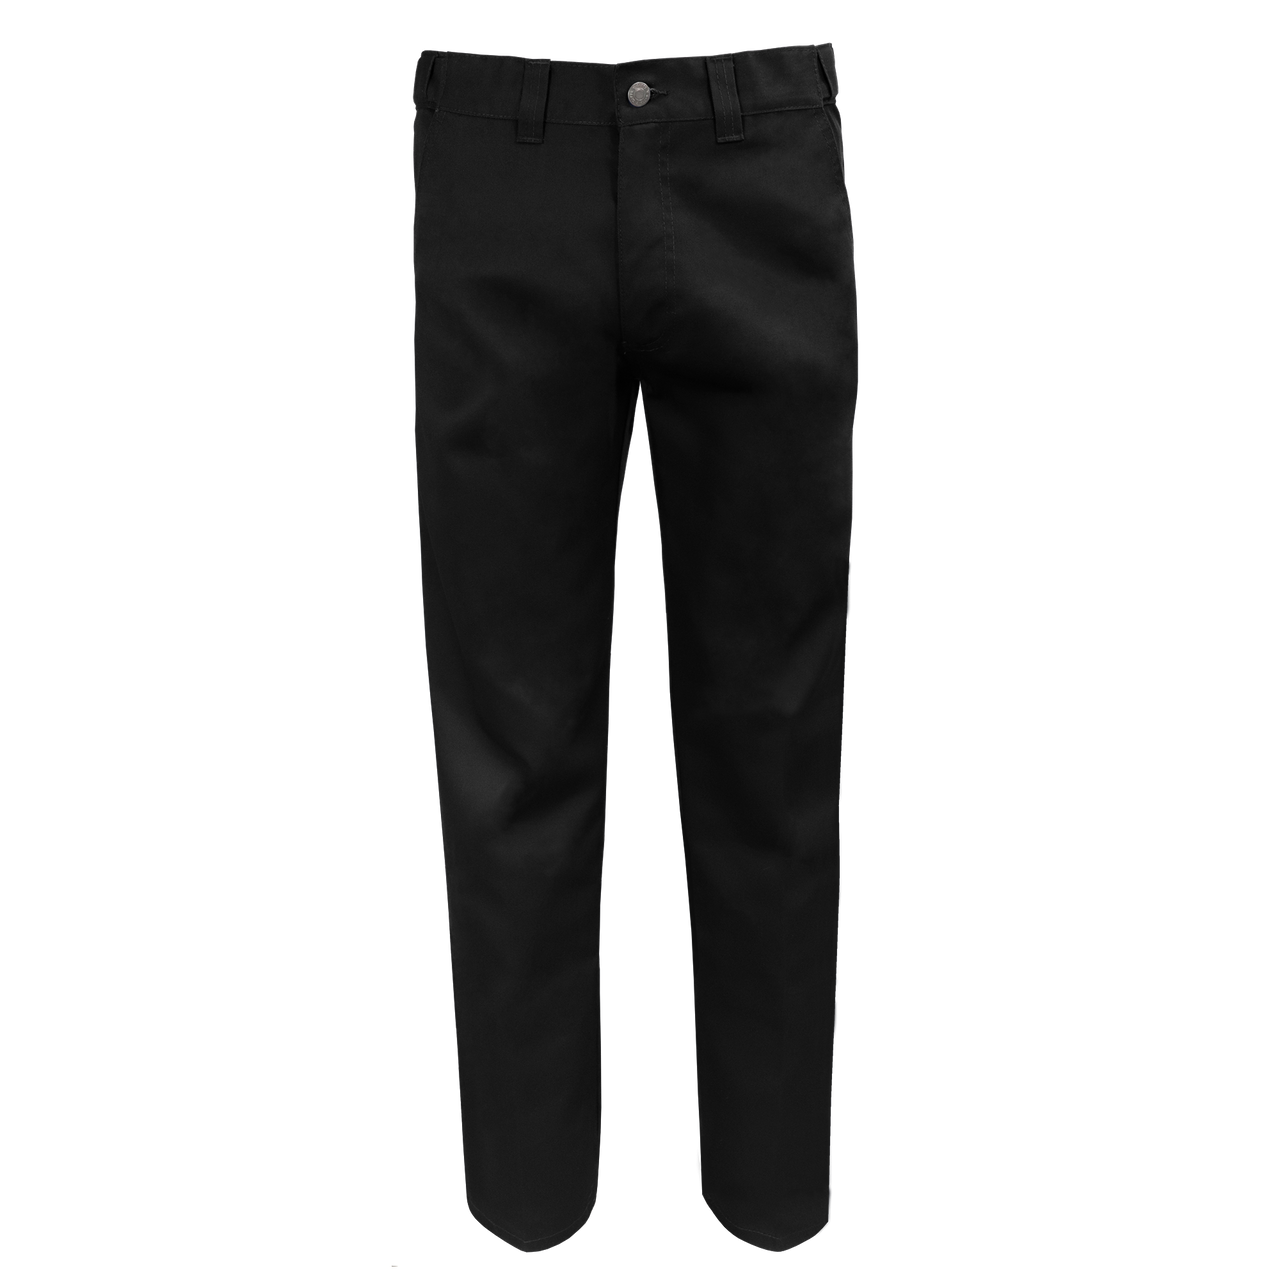 MRB-777 - Pantalon de travail (taille flexible)||MRB-777 - Workwear pant (flexible waist)